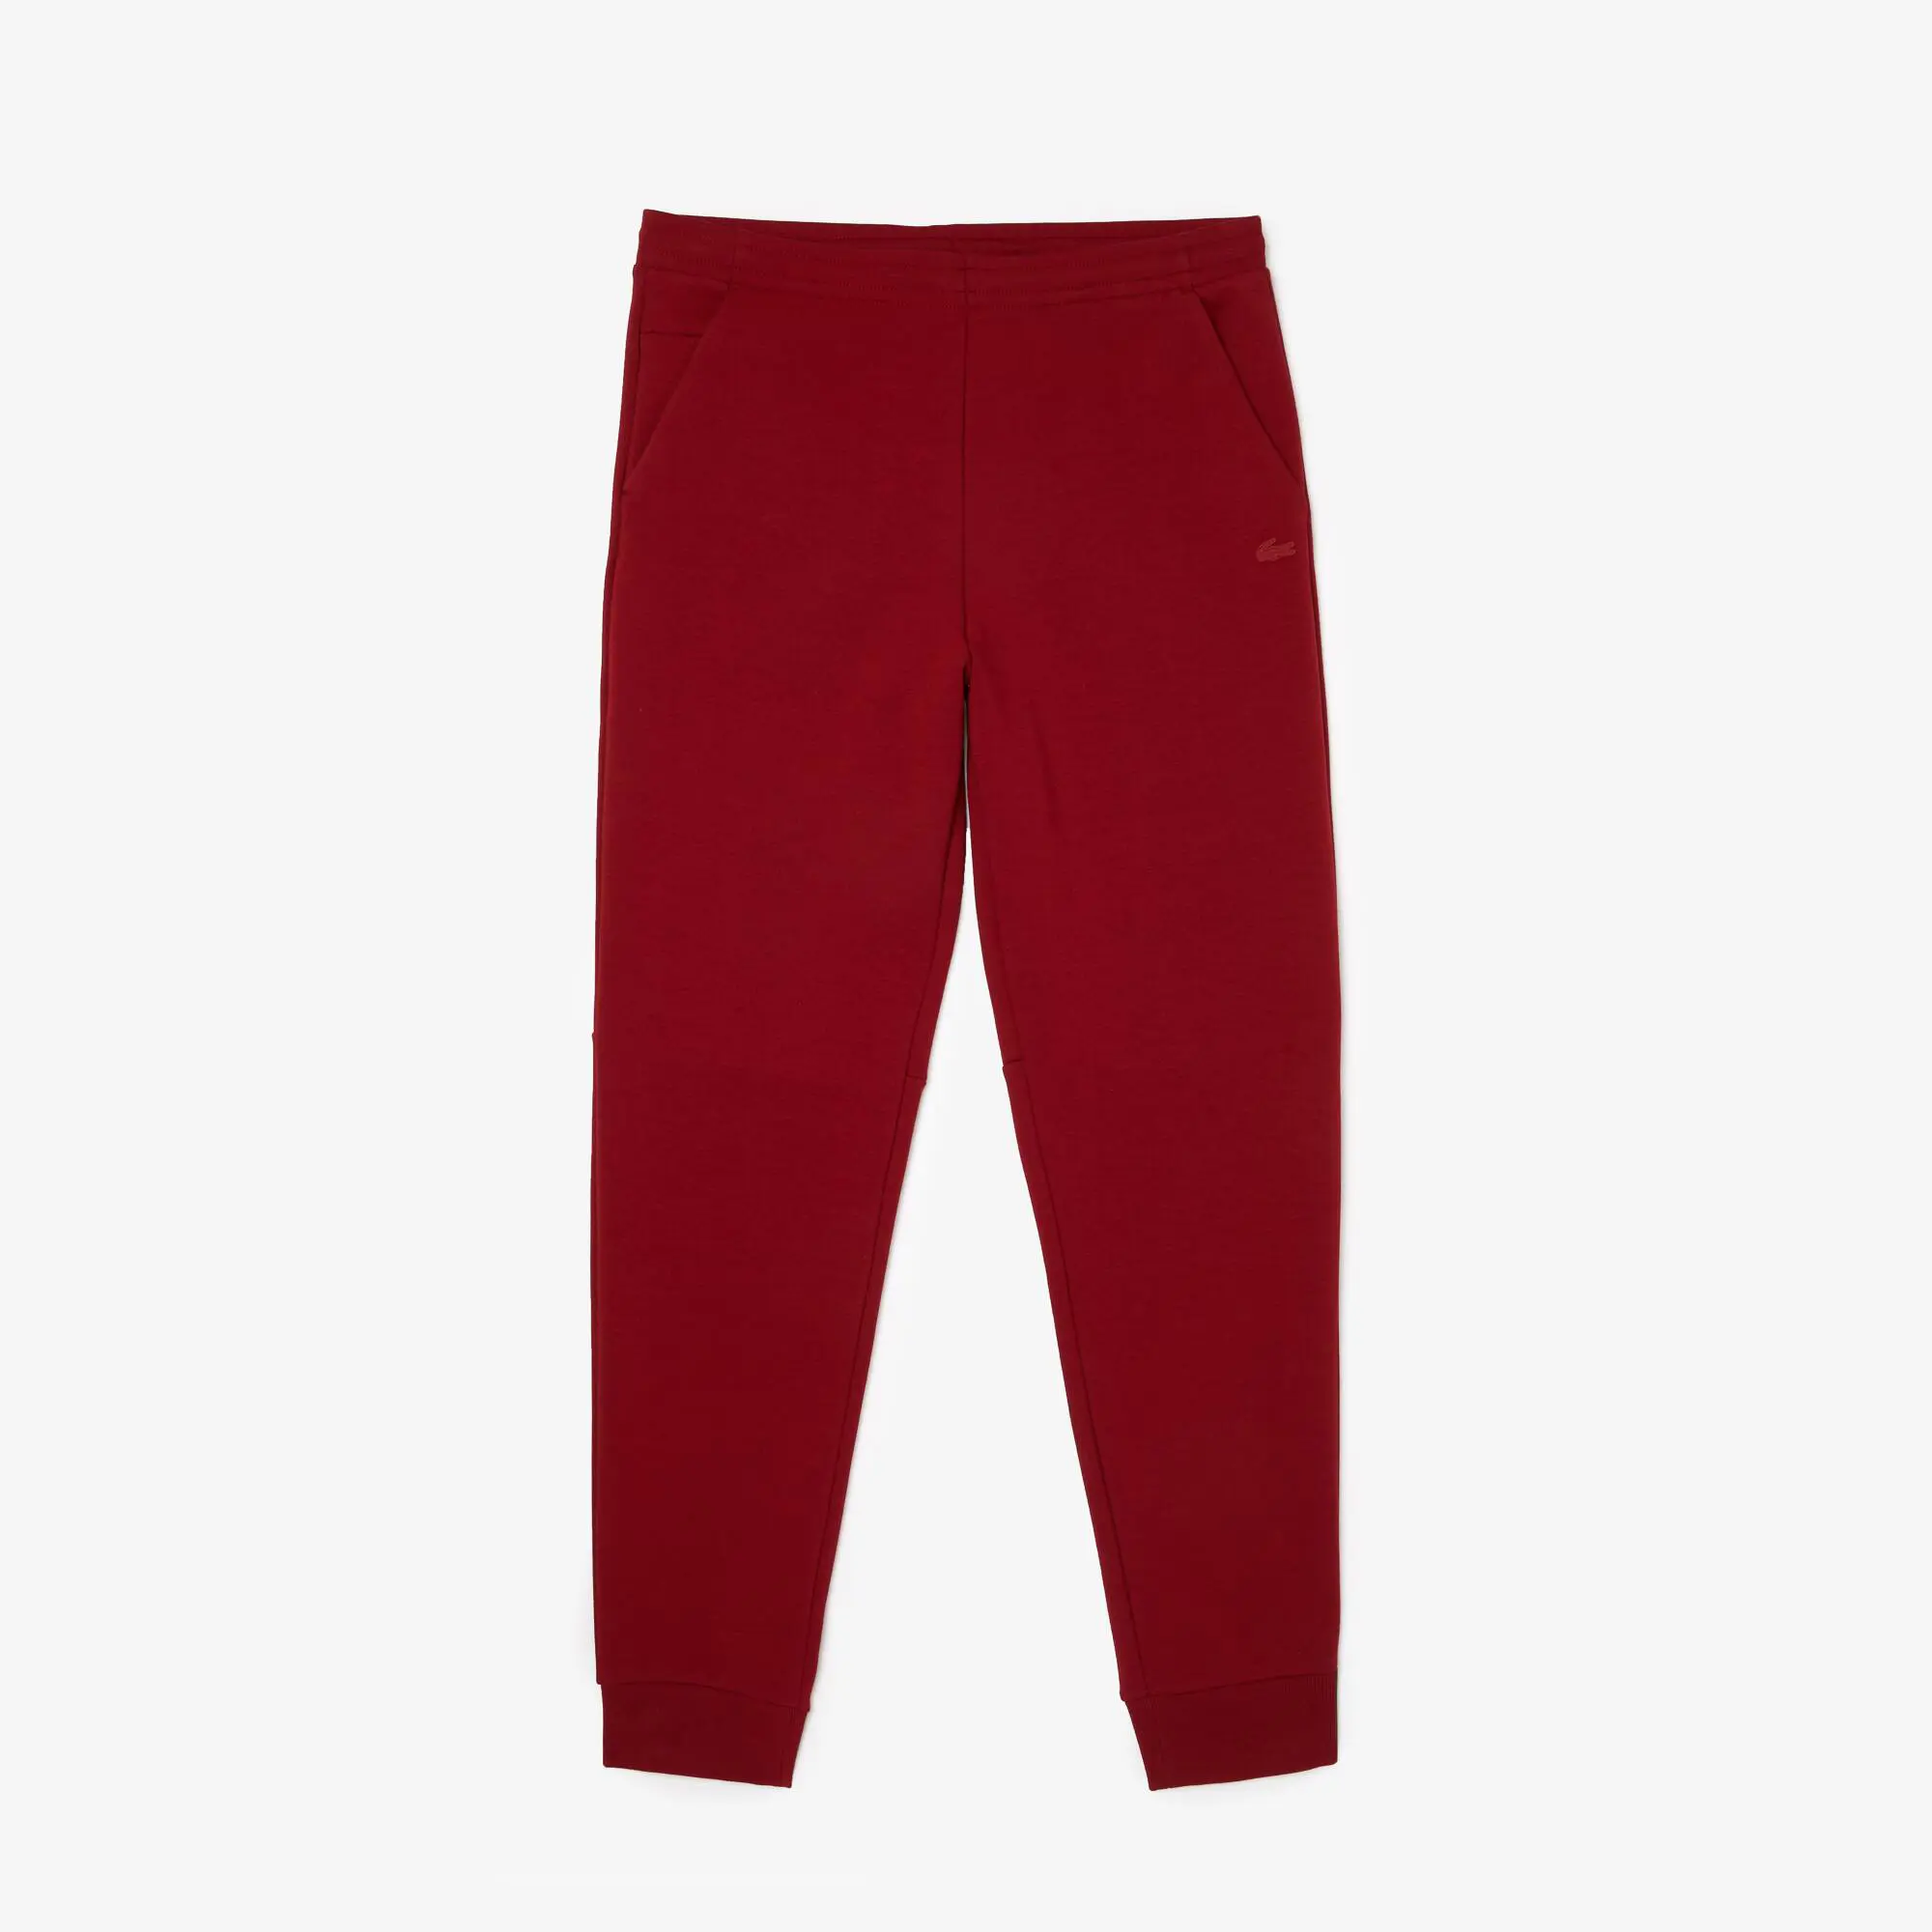 Lacoste Pantalón deportivo para hombre slim fit en mezcla de algodón calefactable. 2